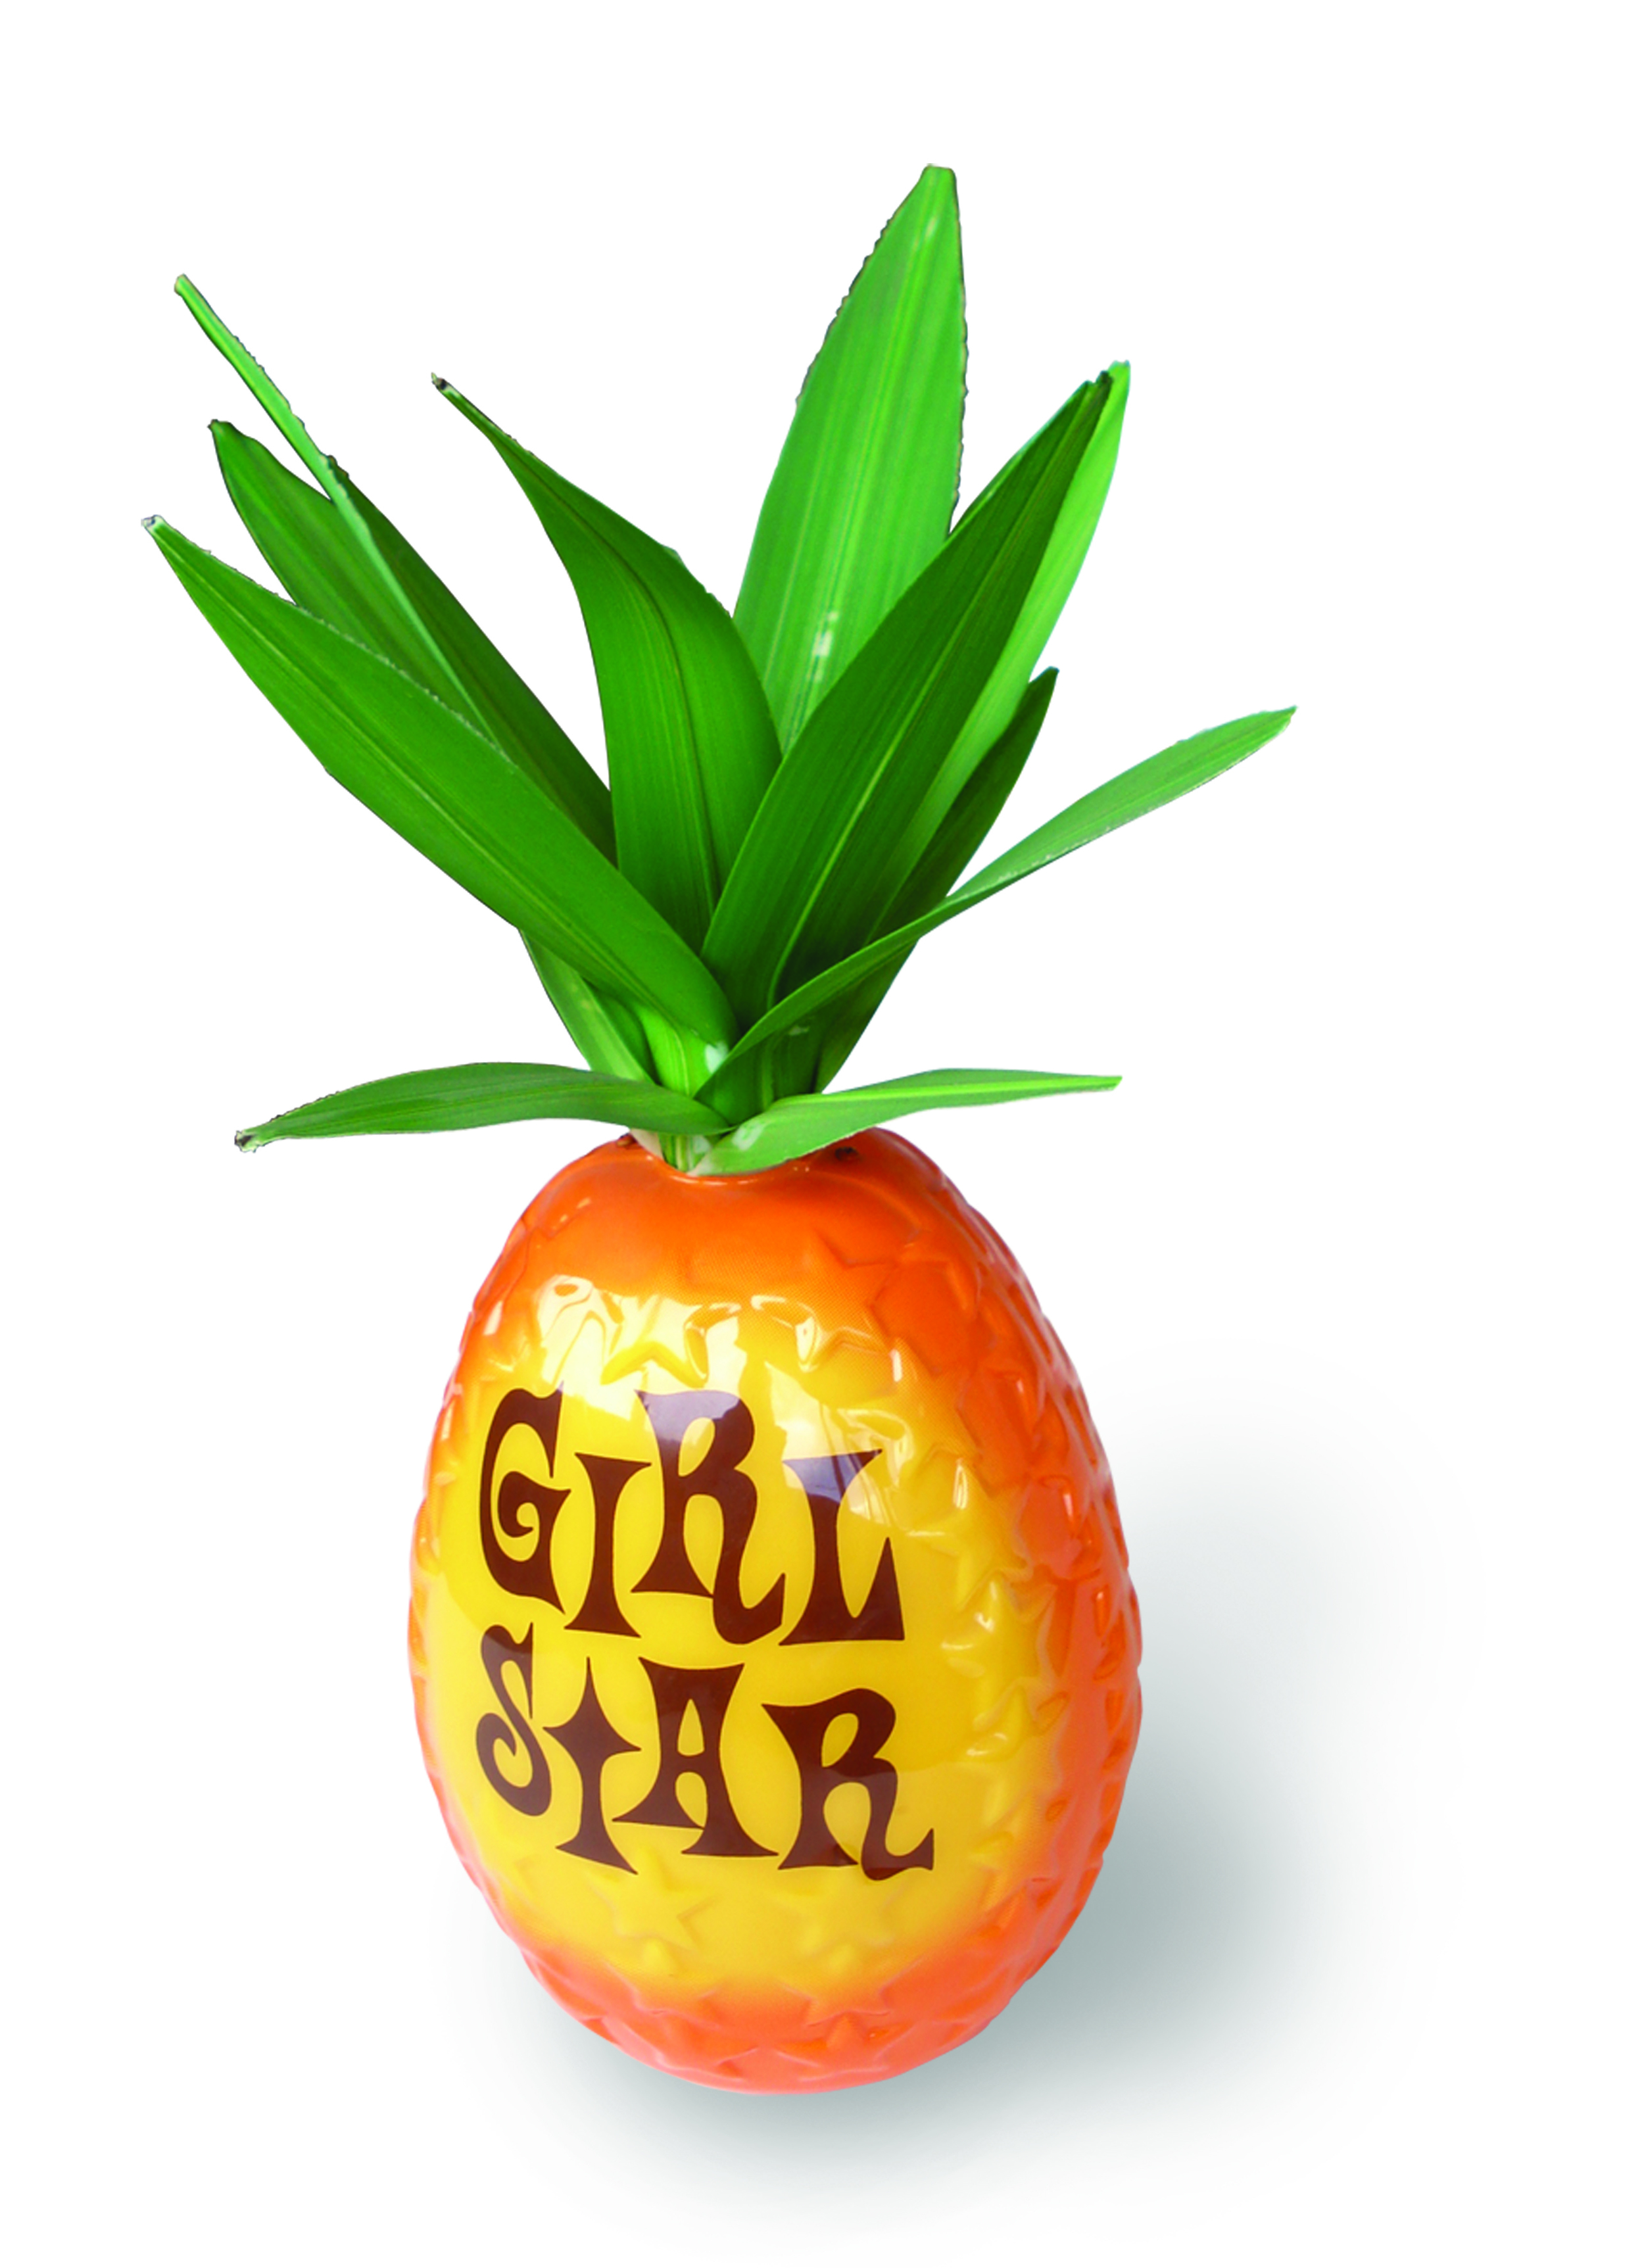 Girl star pineapple - illuminated